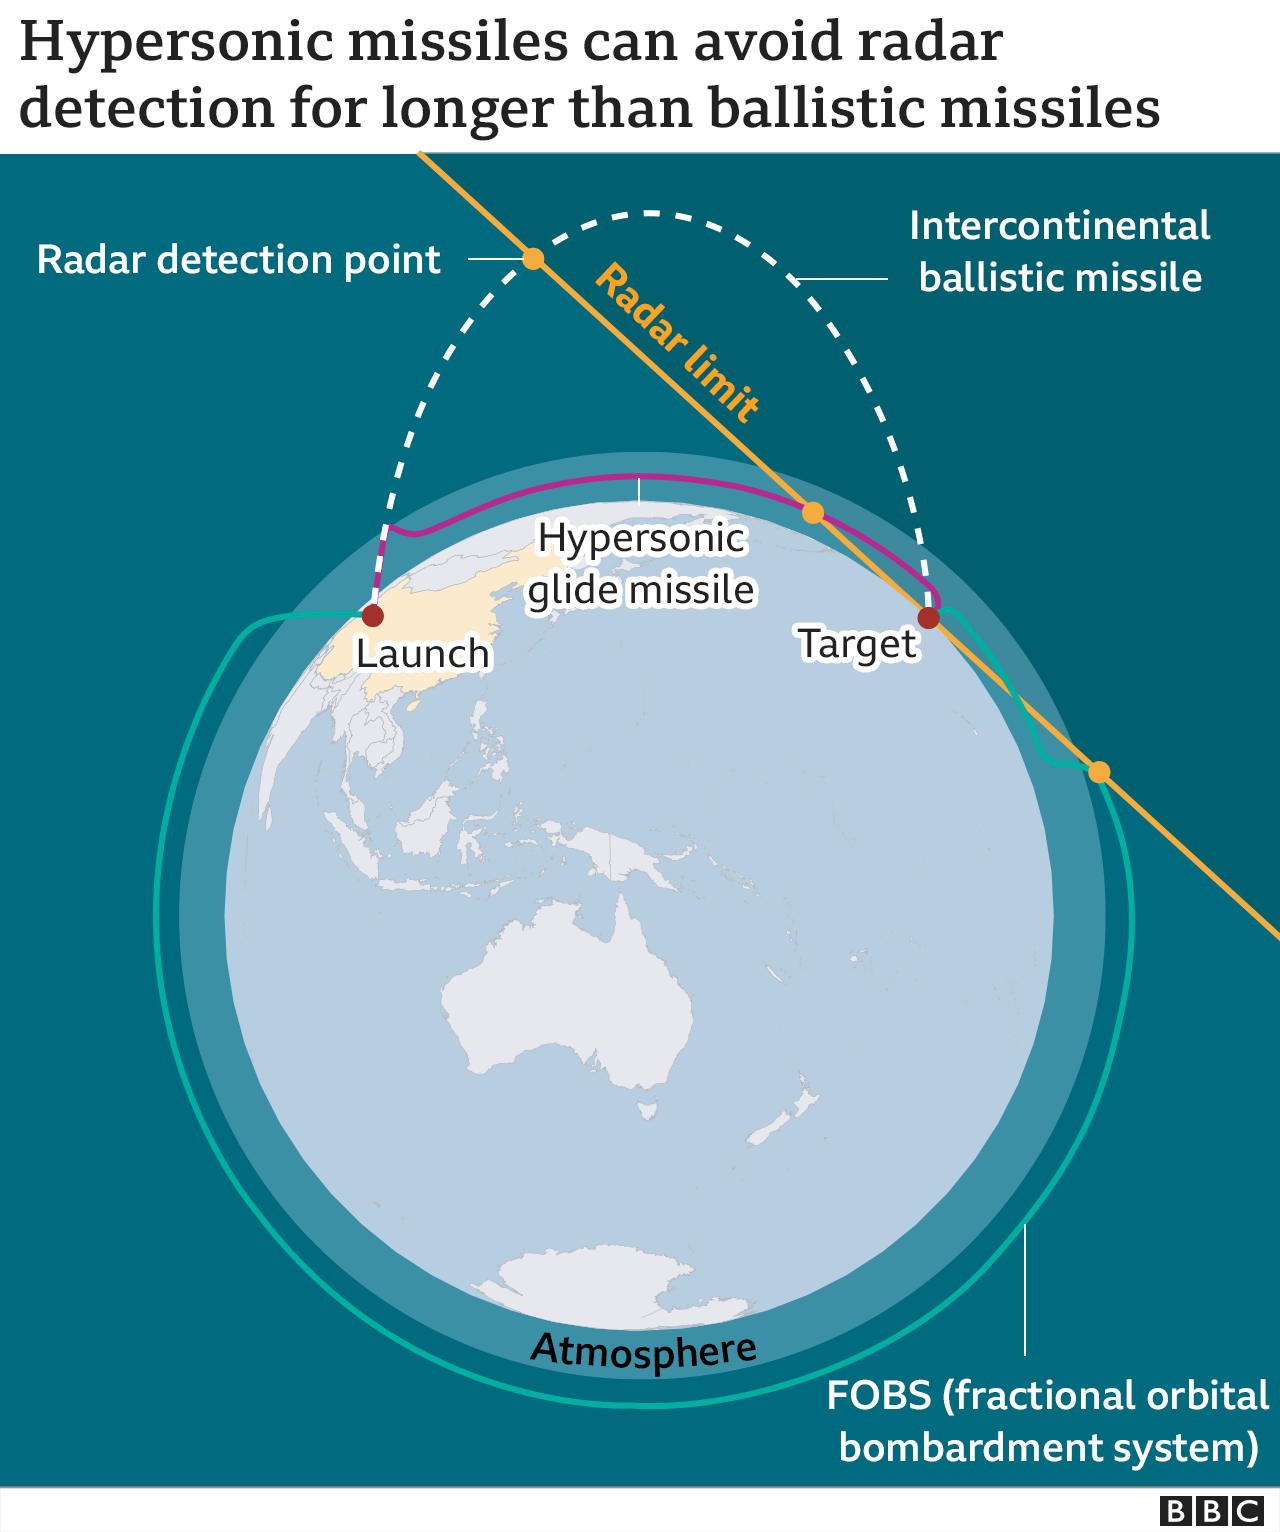 澳洲将研发和制造高超音速导弹